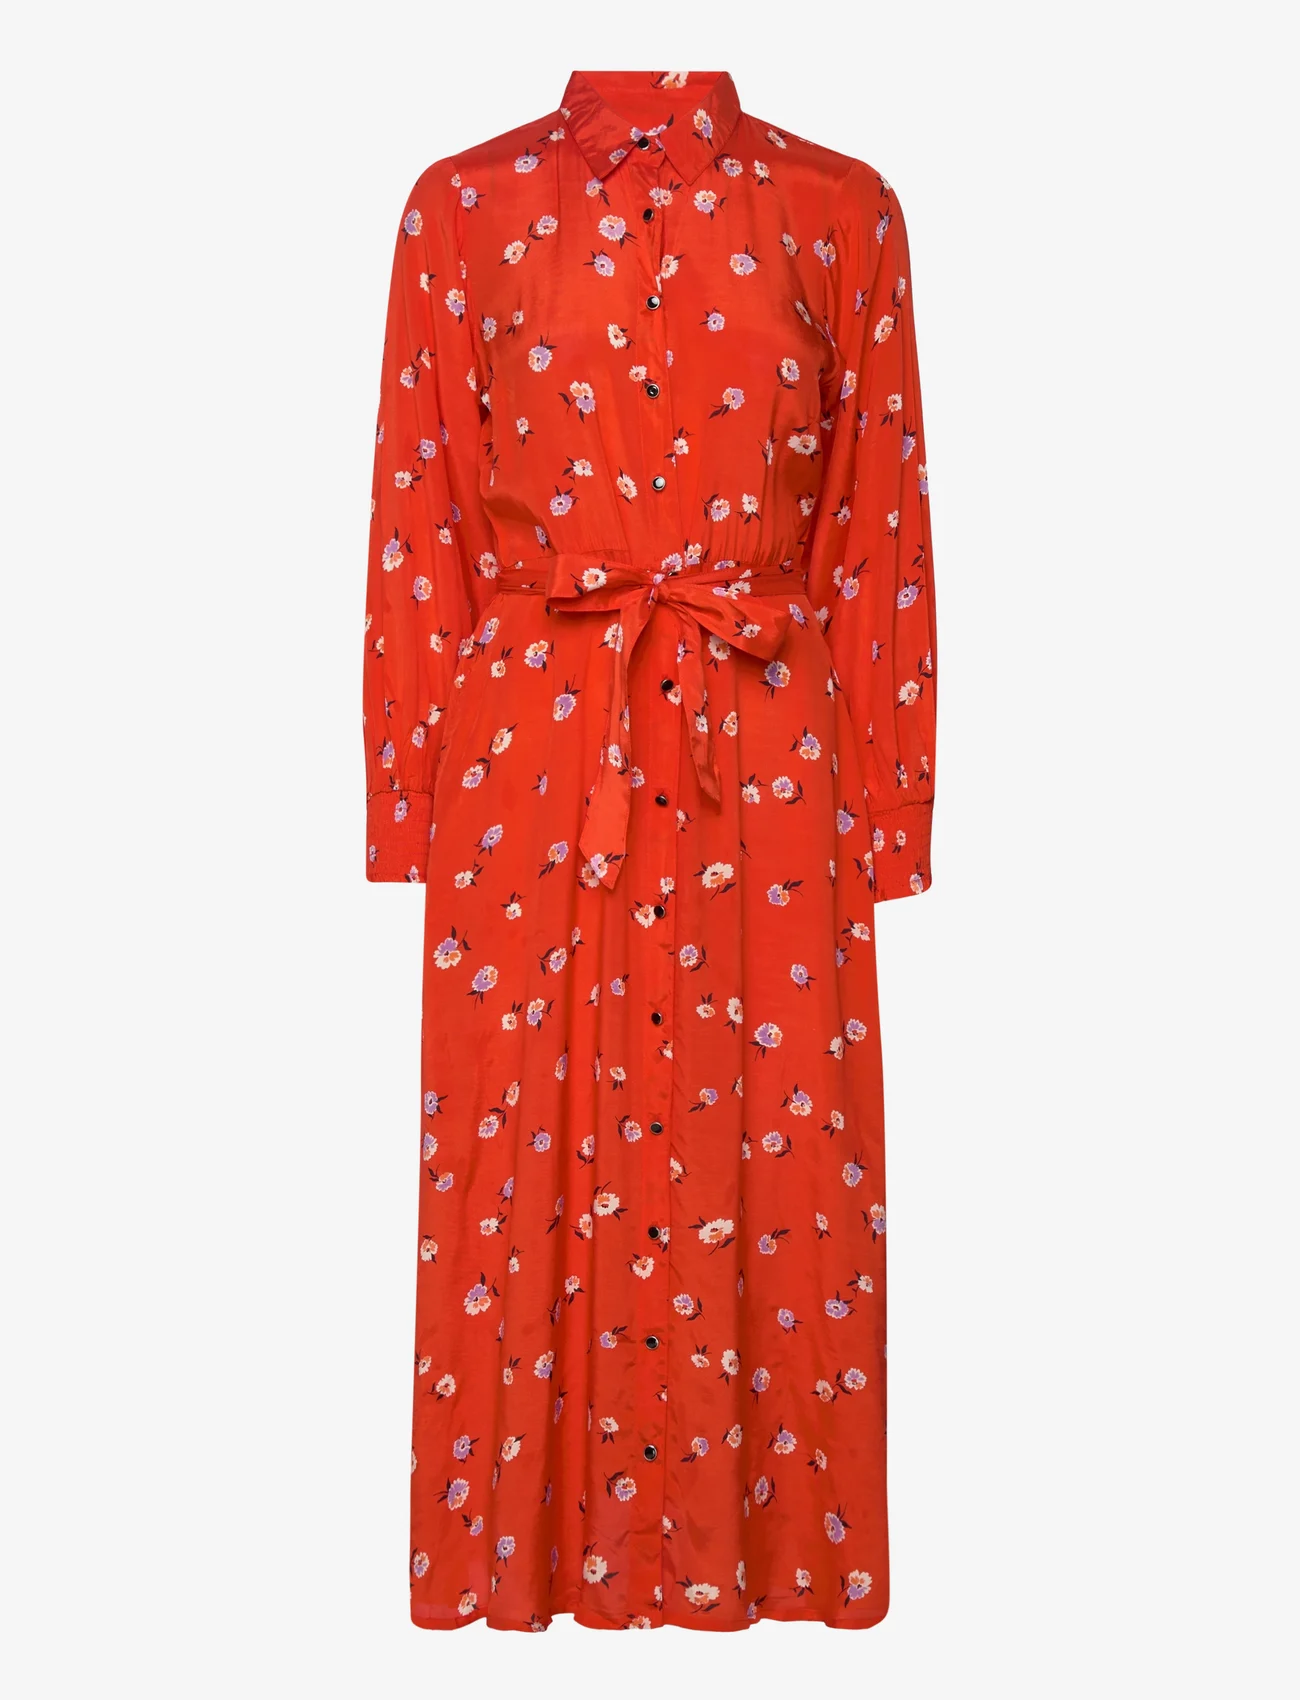 Kaffe - KAobina Oline Dress - marškinių tipo suknelės - fiery red flower print - 0